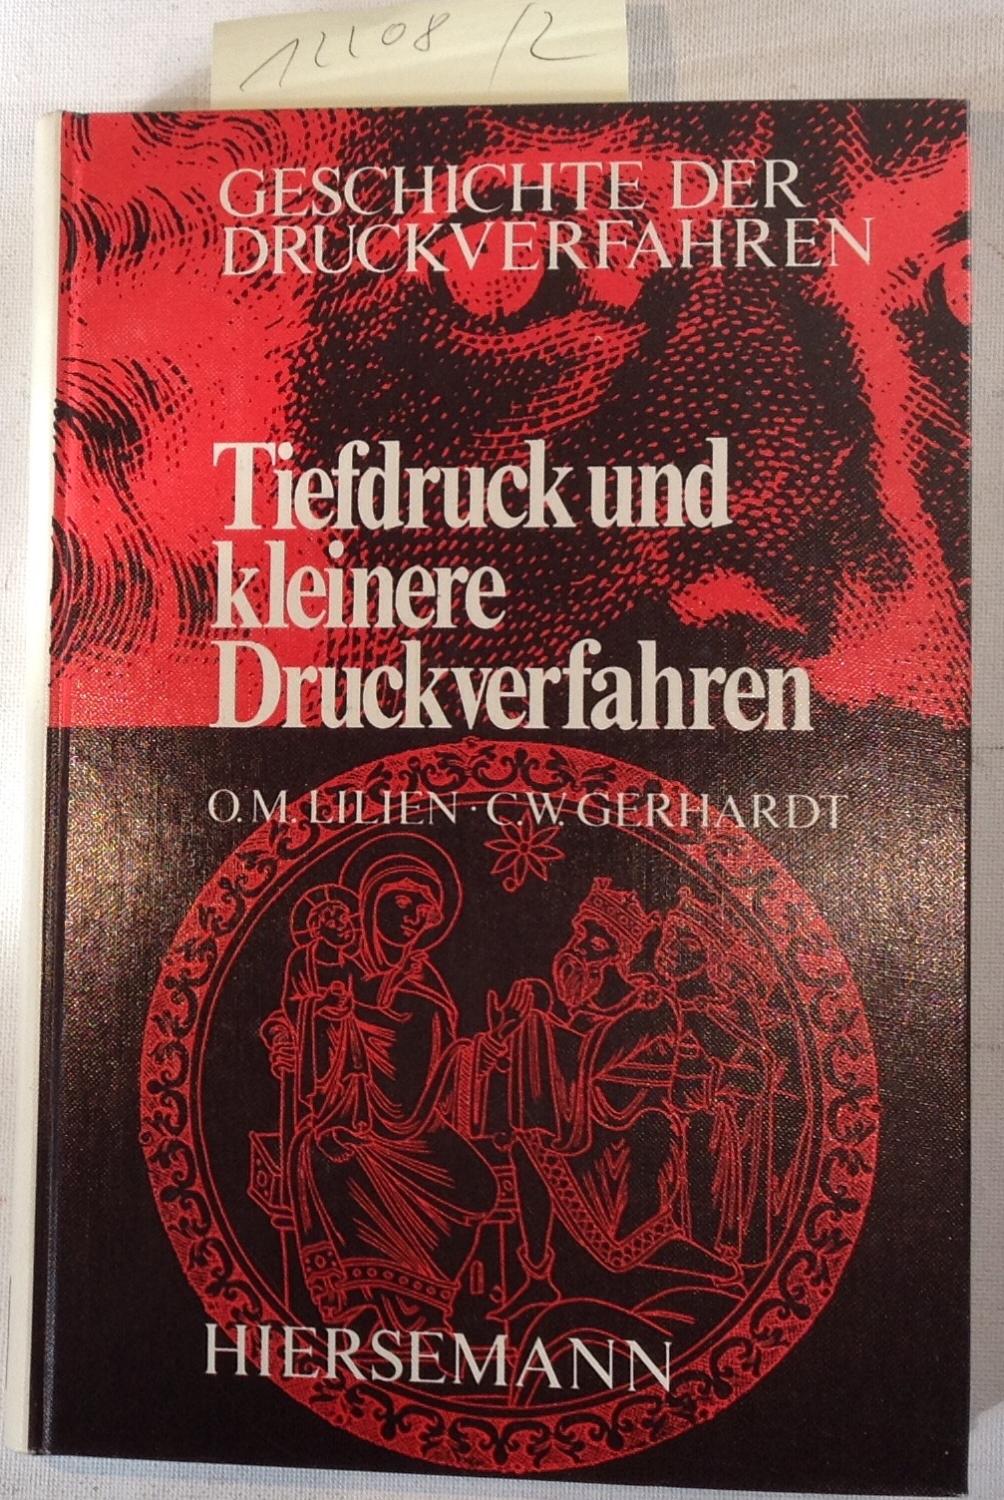 Der Tiefdruck - Die Kleineren Druckverfahren - Geschichte Der Druckverfahren, Teil III - Lilien, Otto M. / Gerhardt, Claus W.